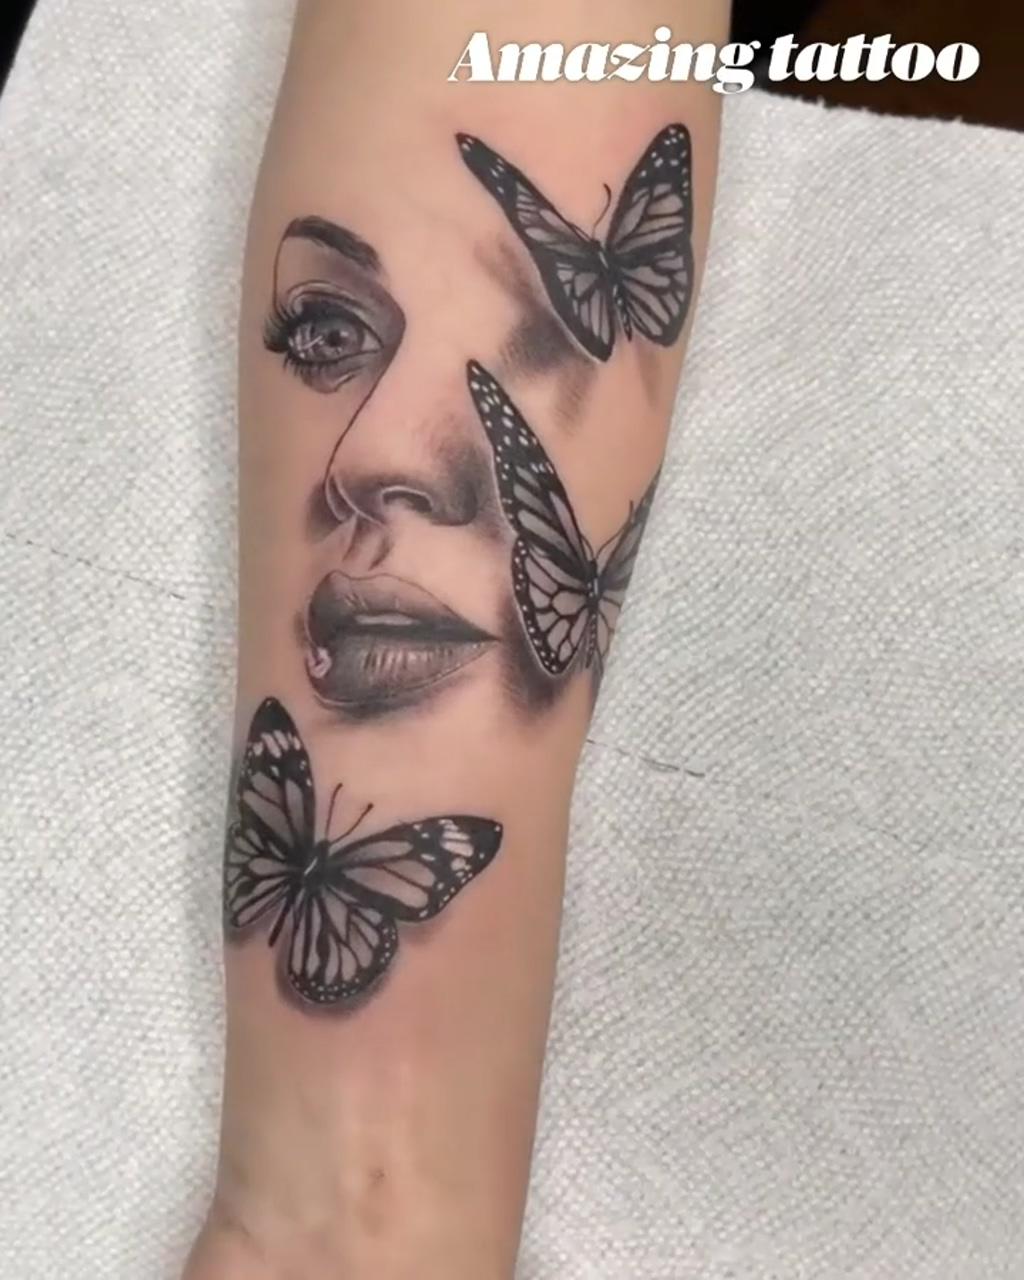 Amazing tattoo ideas; grey ink tattoo